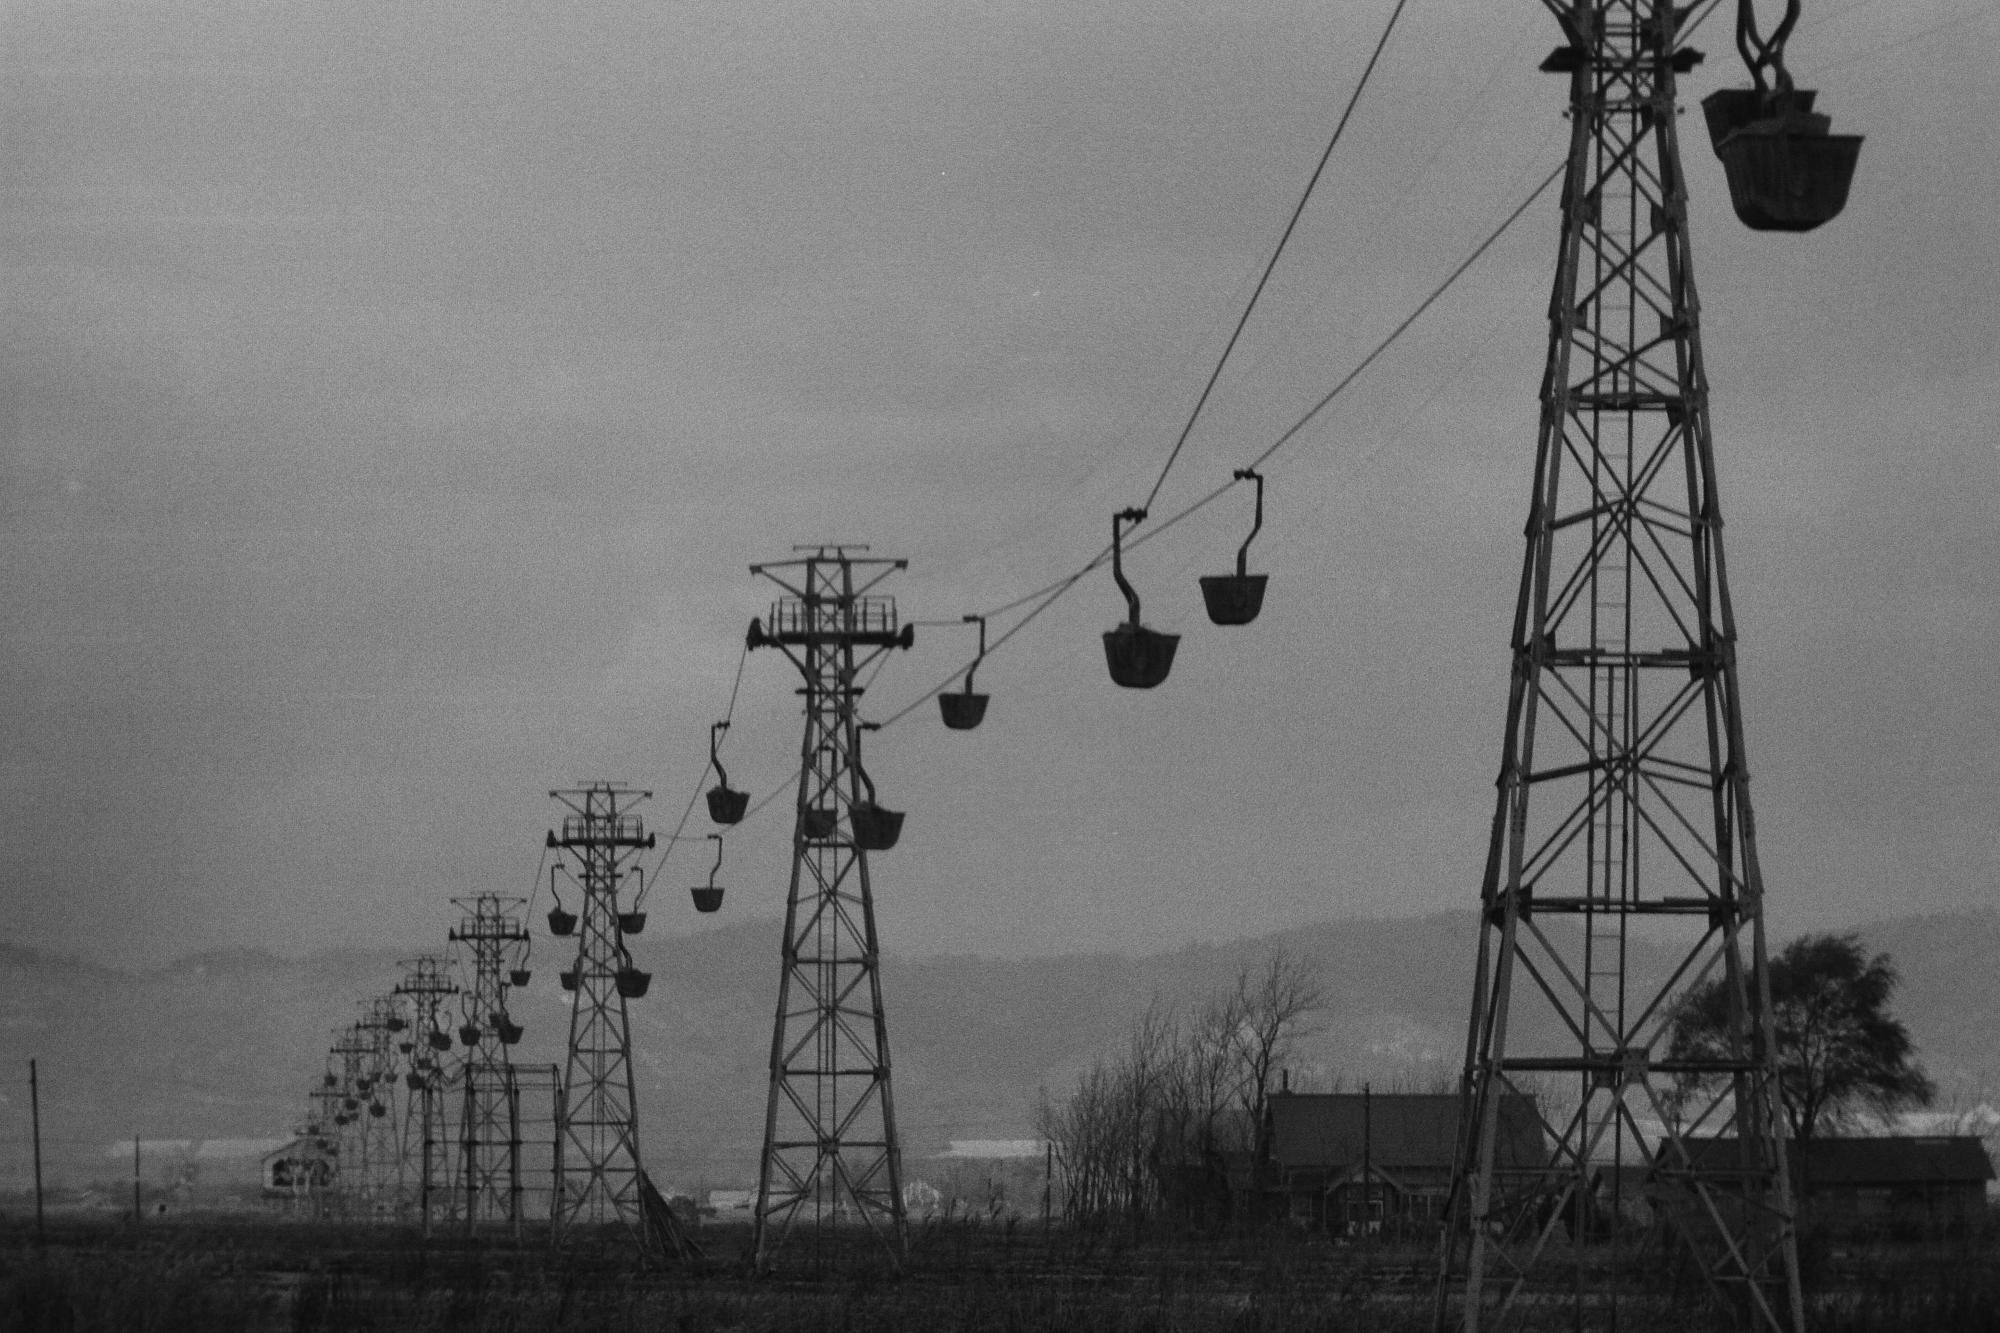 鉄塔が並び、ゴンドラで土を運ぶ様子が打つる昭和44年大願地区の索道客土の白黒写真